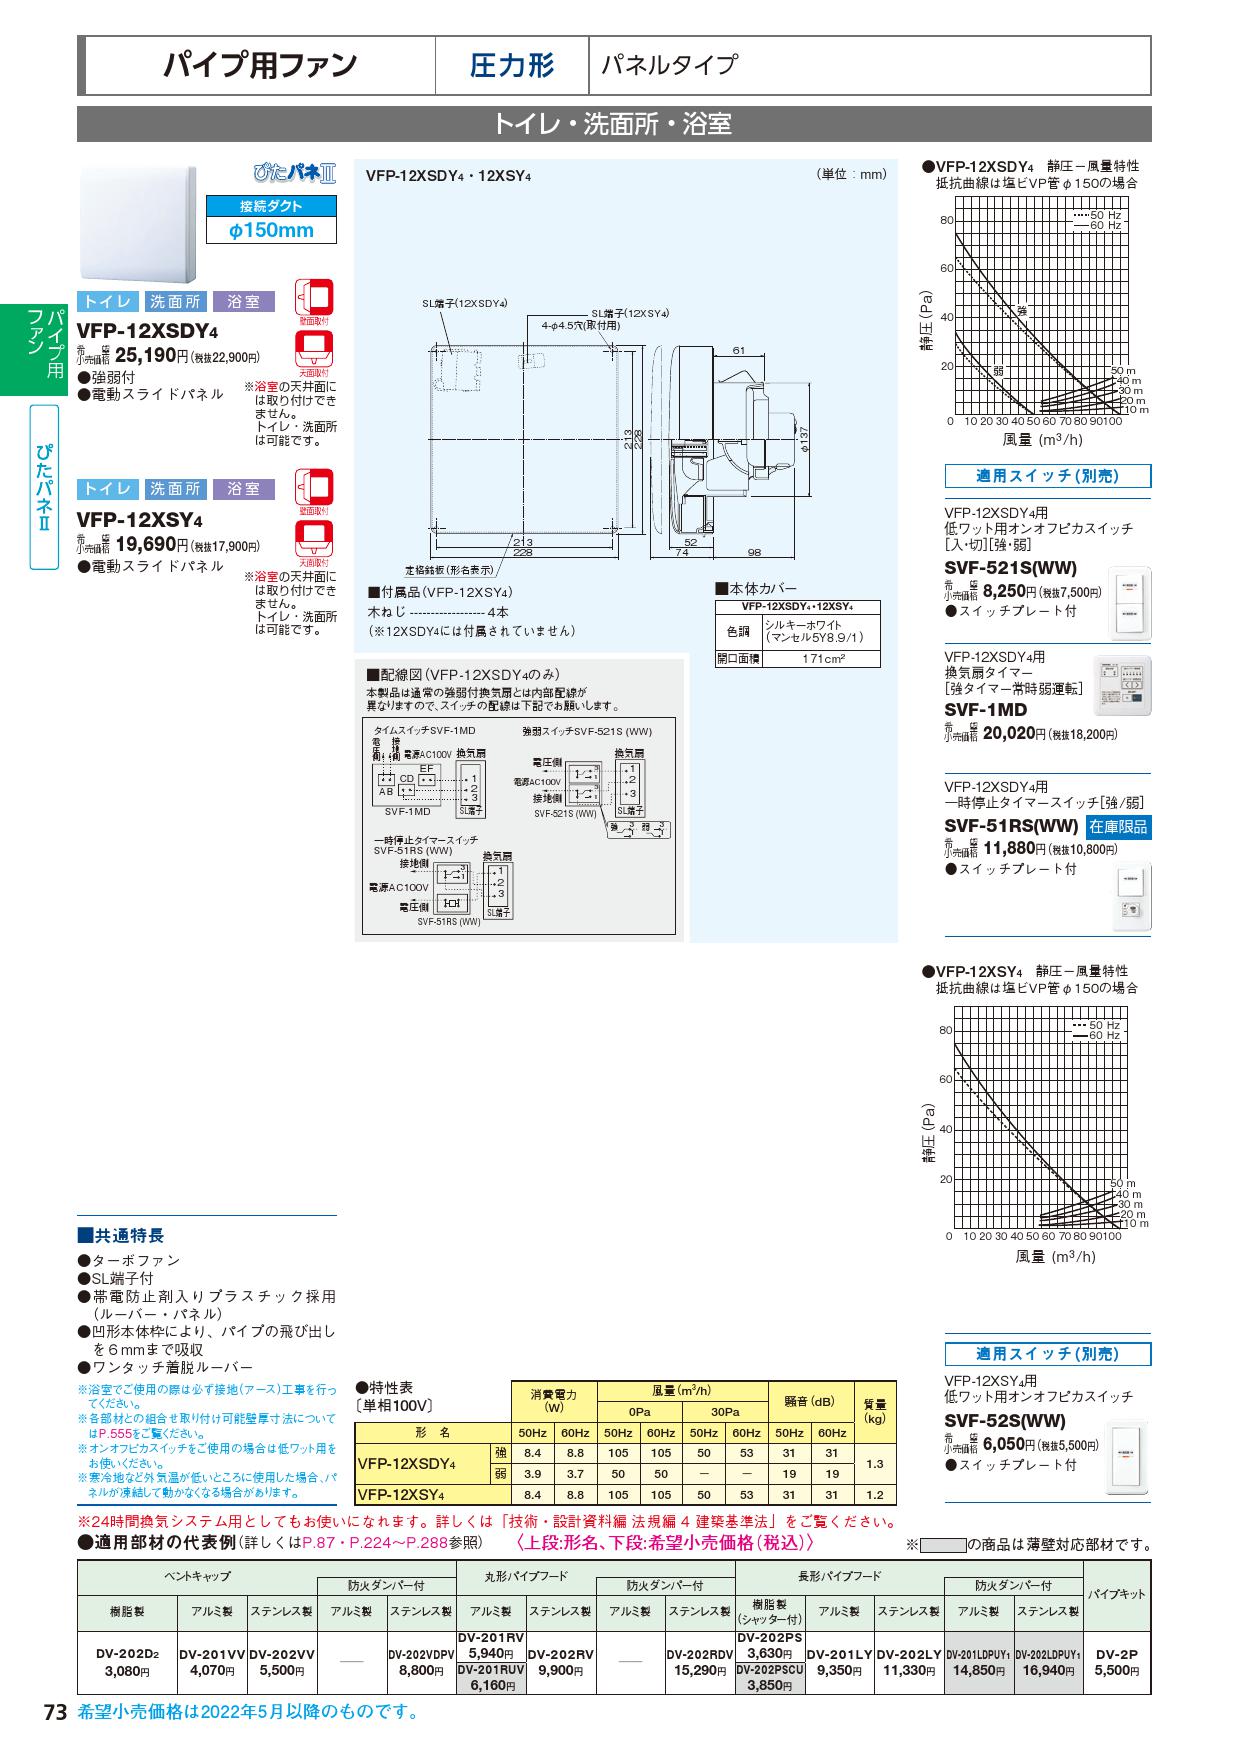 東芝 TOSHIBA 圧力形パイプ用ファン VFP-12XASD4 - 4